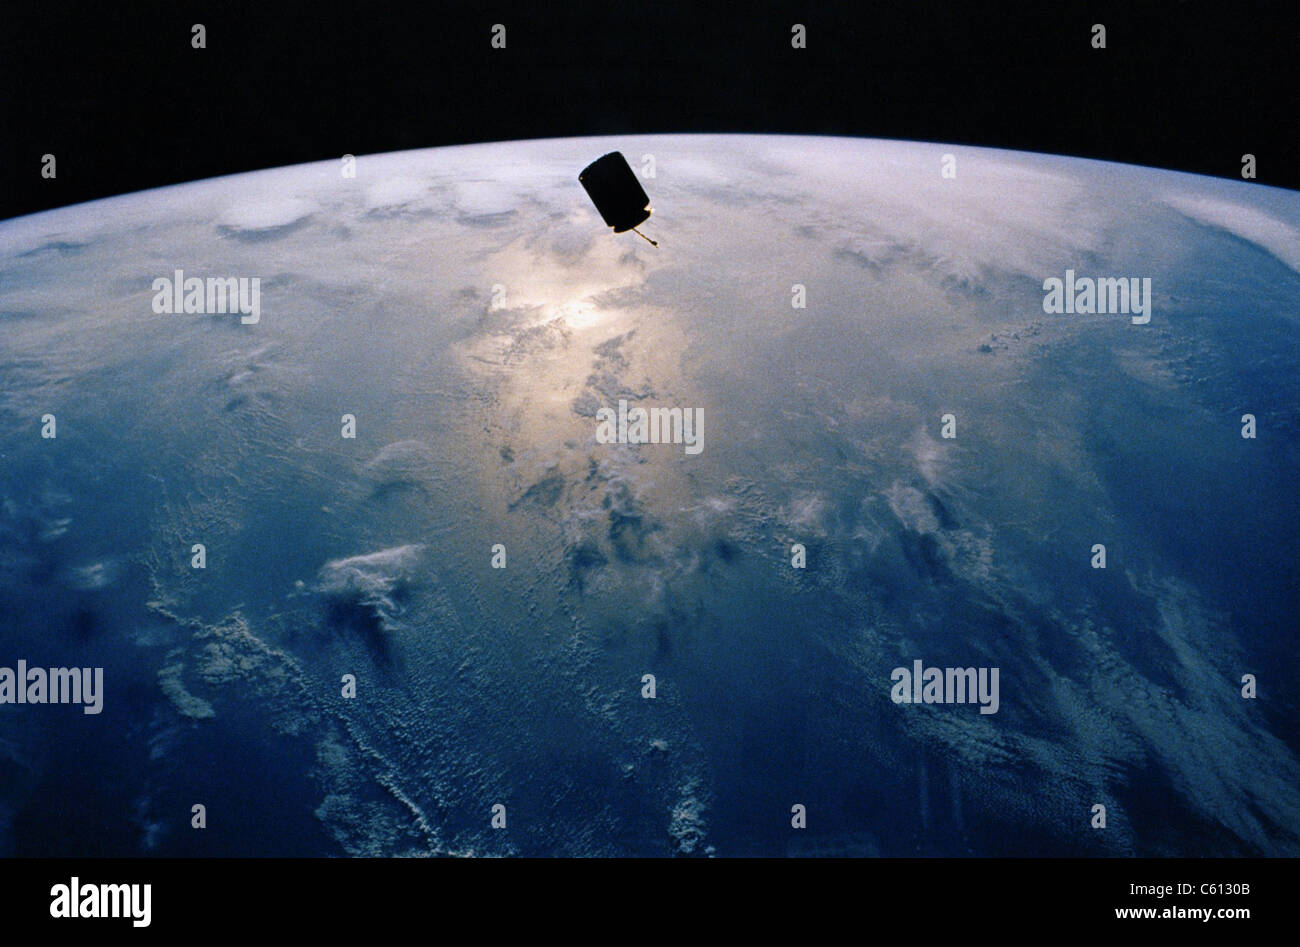 INTELSAT VI, ein Kommunikationssatellit war nach seiner Markteinführung März 1990 in einen instabilen Orbit gestrandet. Fotografiert von dem Space Shuttle Endeavour im Orbit, wurde abgerufen und in eine stabile Umlaufbahn von Astronauten im Mai 1992 umgeschichtet. Stockfoto